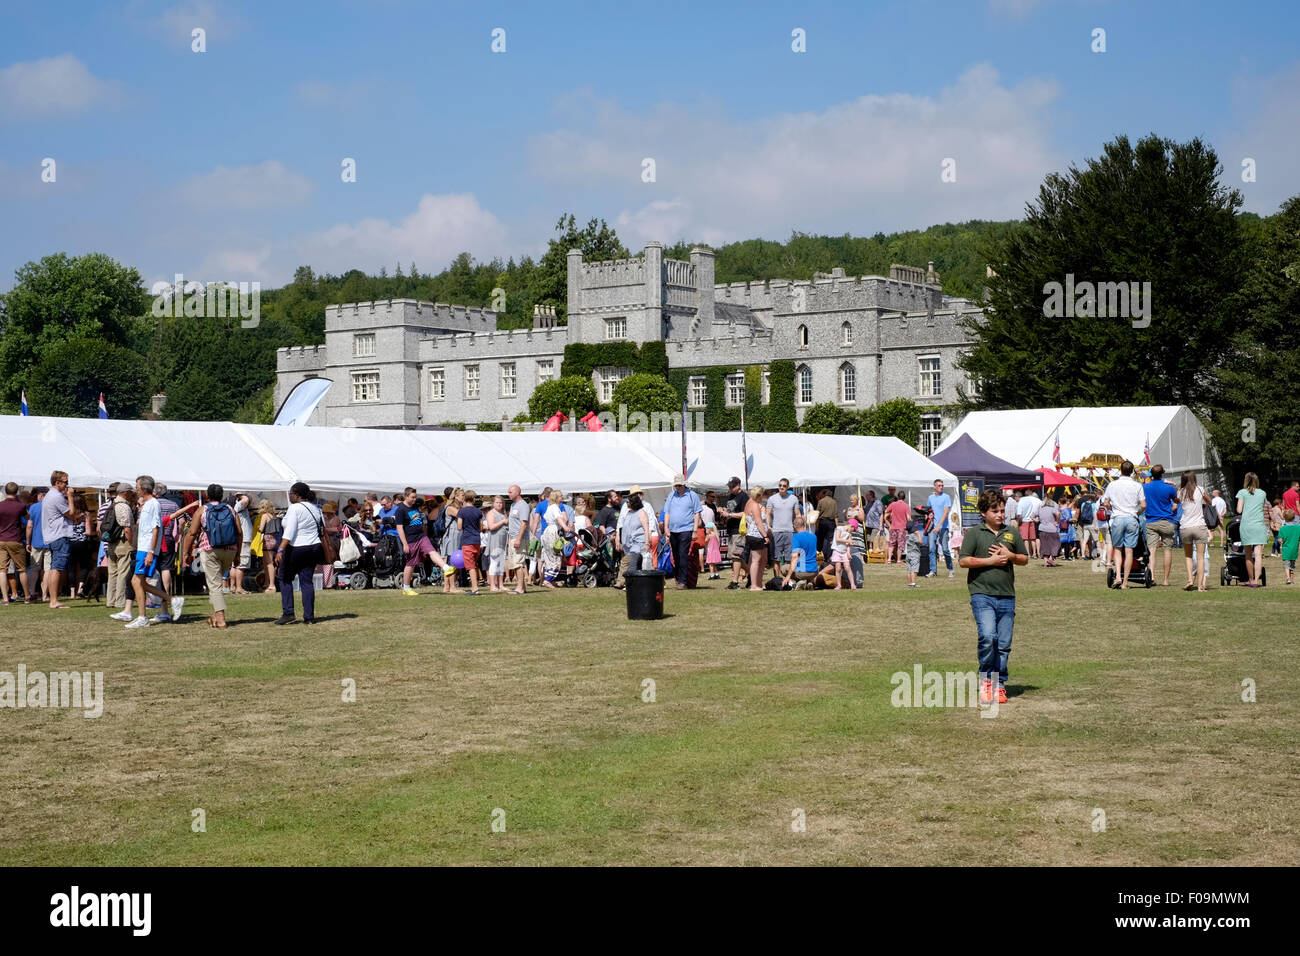 Las multitudes que llegan a la guindilla festival fiesta en West dean jardines cerca de Chichester, West Sussex, Inglaterra 2015 Foto de stock